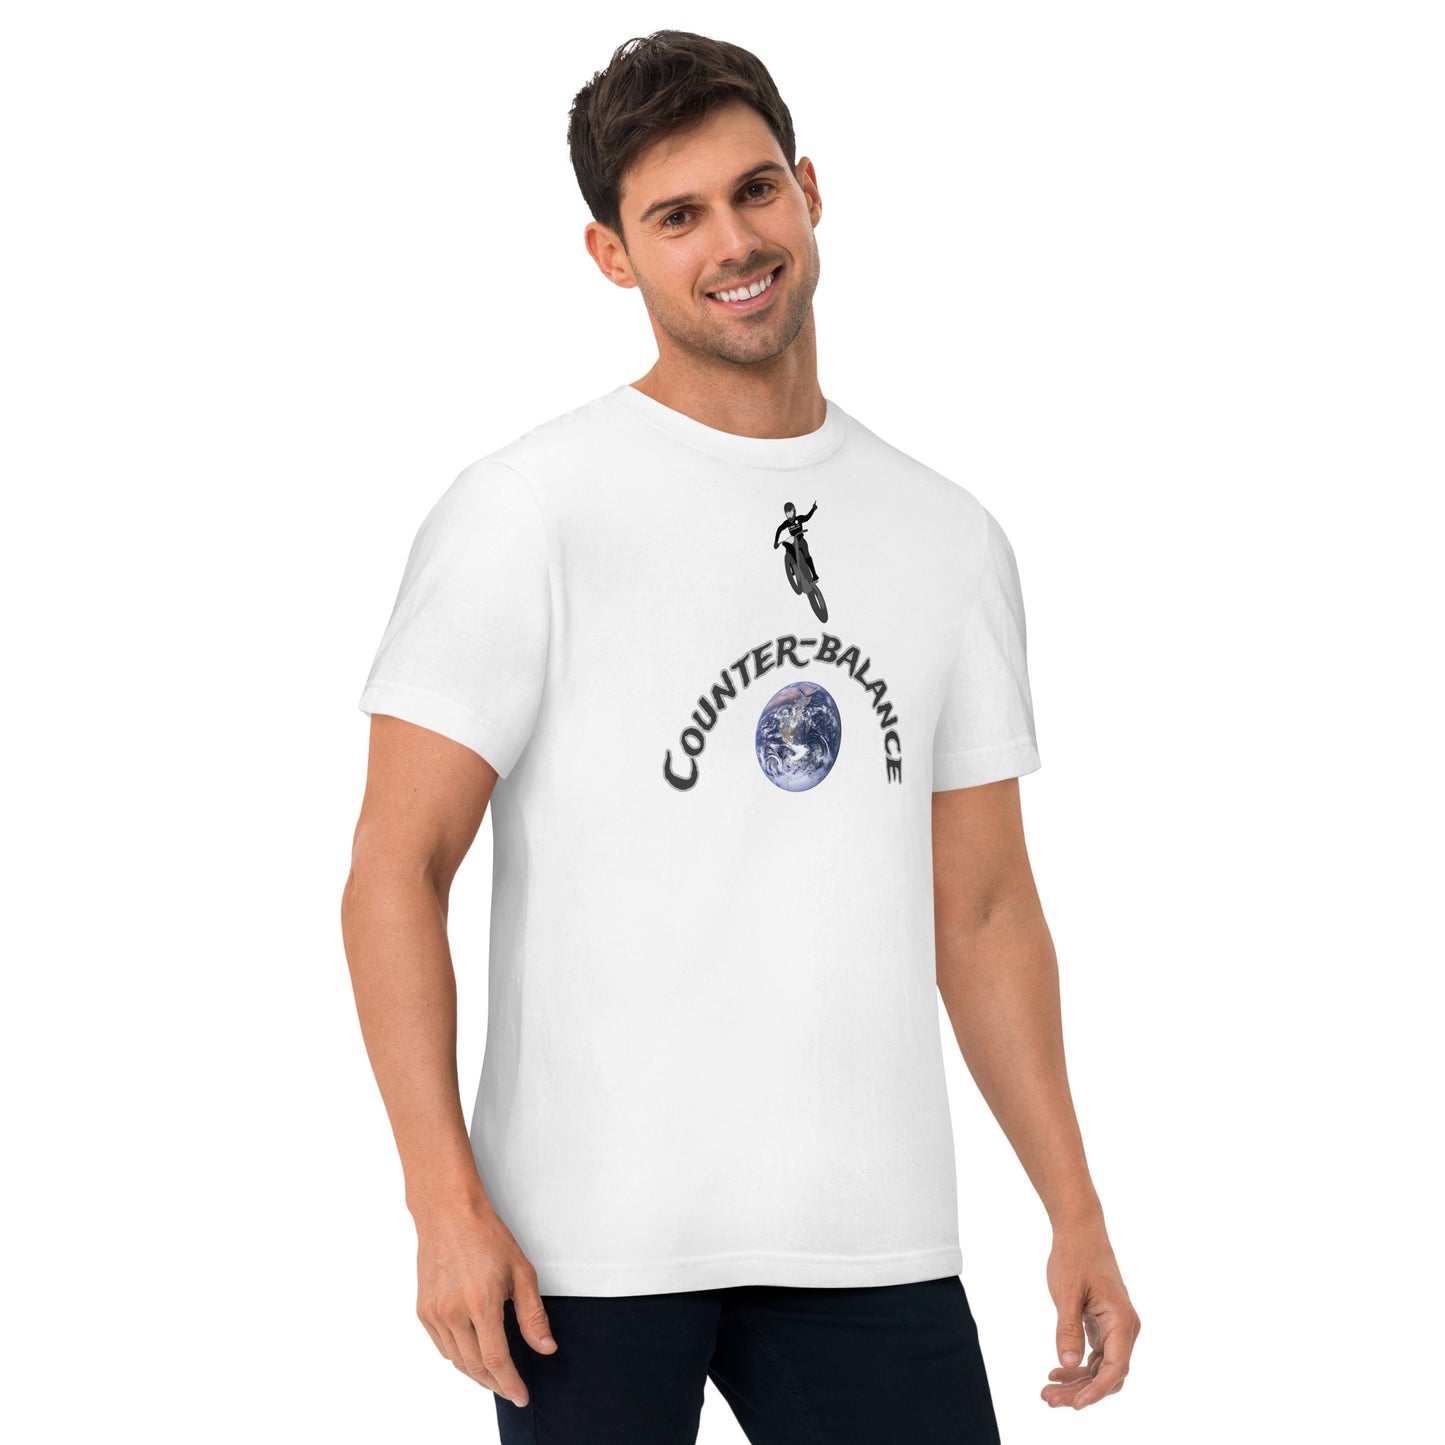 E016 - T-shirt/Bentuk standard (Lompat angkasa : Putih/Hitam)